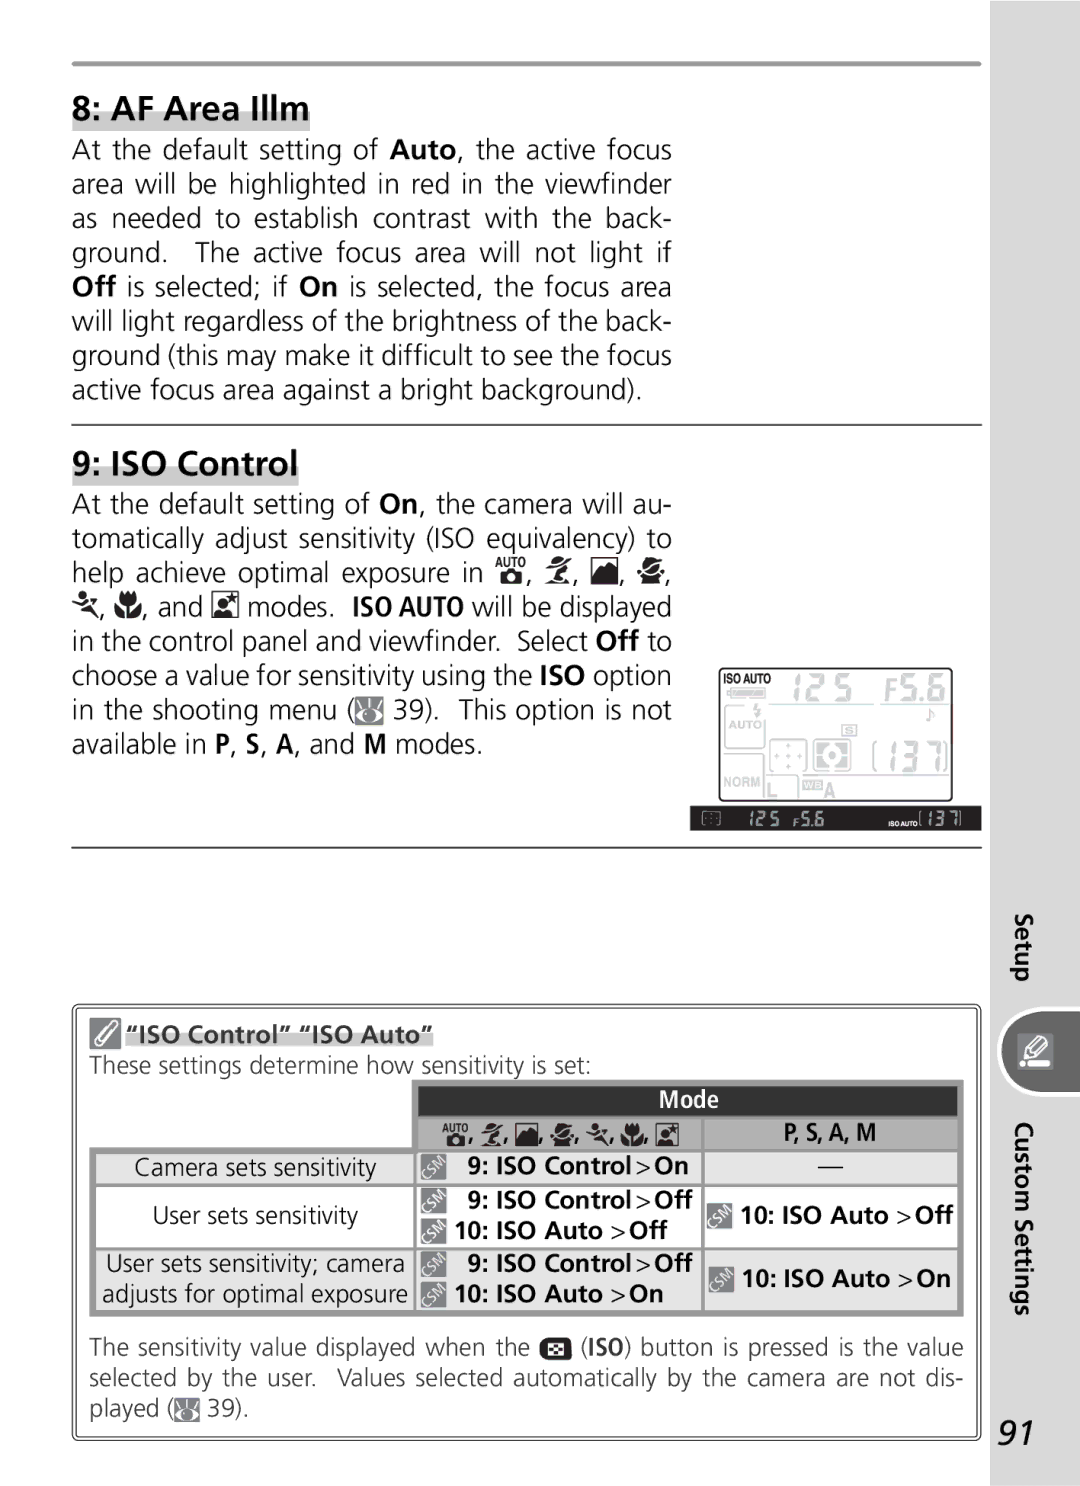 Nikon D50 manual AF Area Illm, ISO Control ISO Auto, Mode 